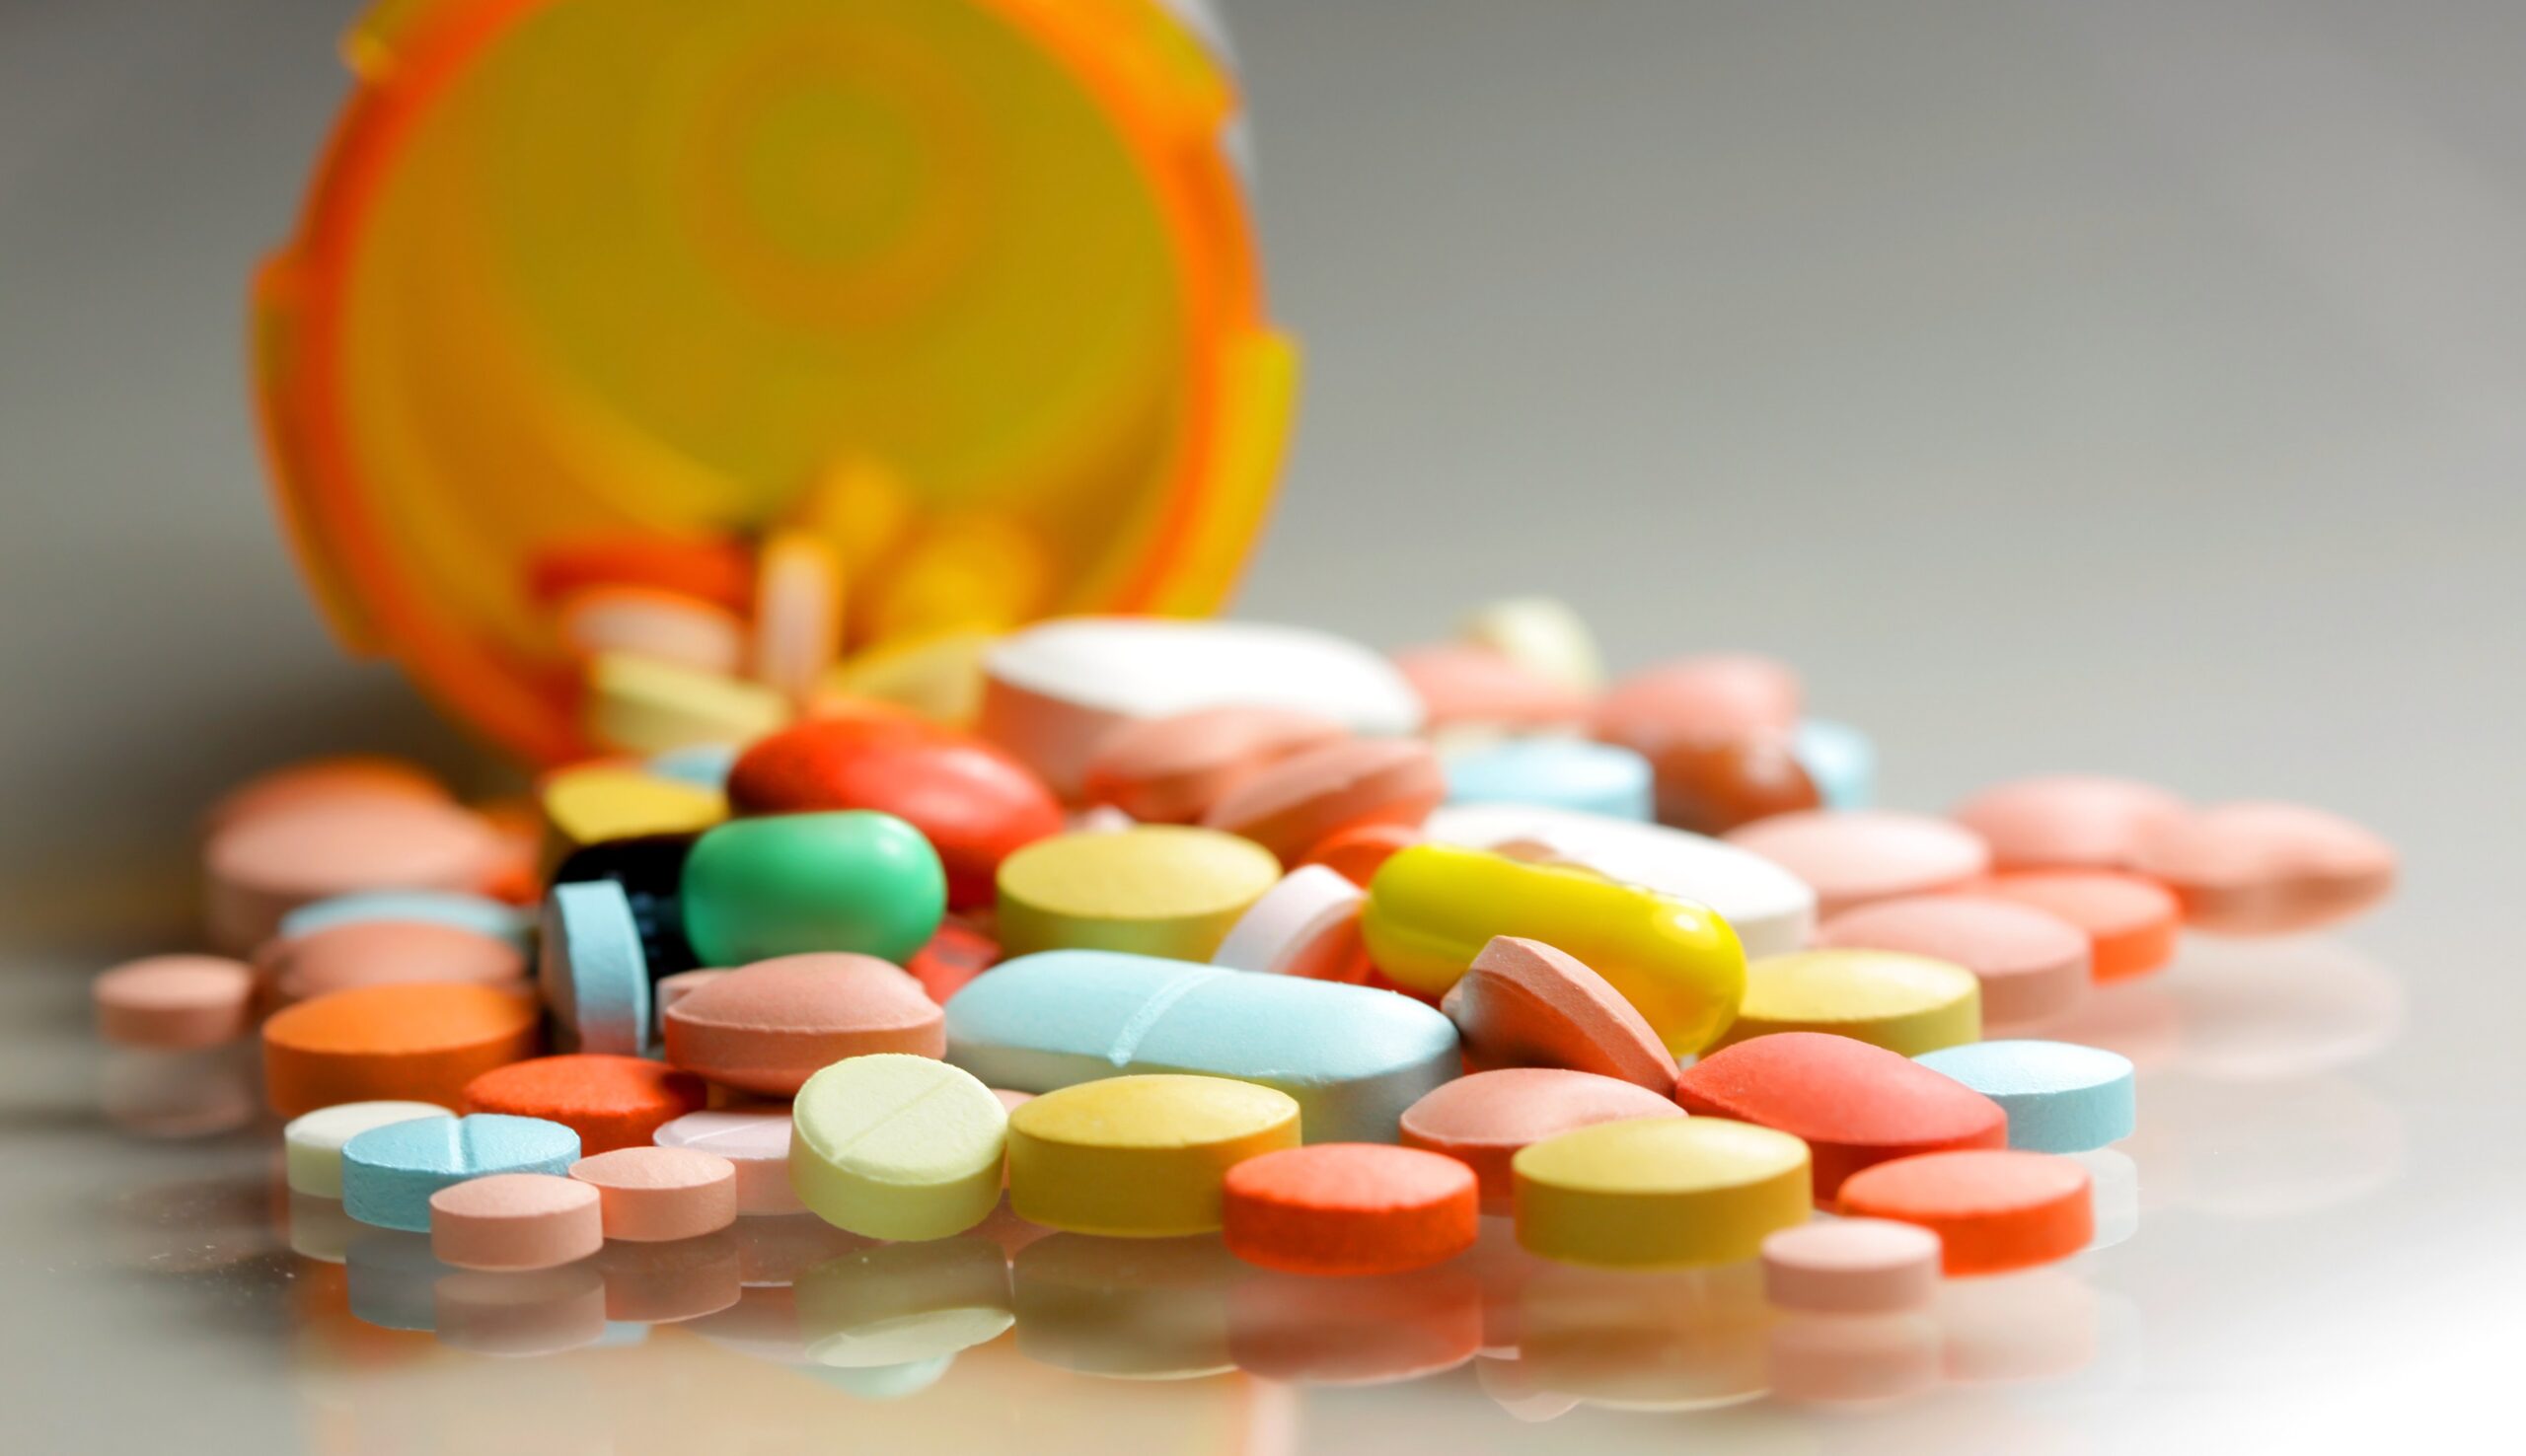 Oregon’s Drug Decriminalization Law Delivers $300 Million to Drug Treatment Programs